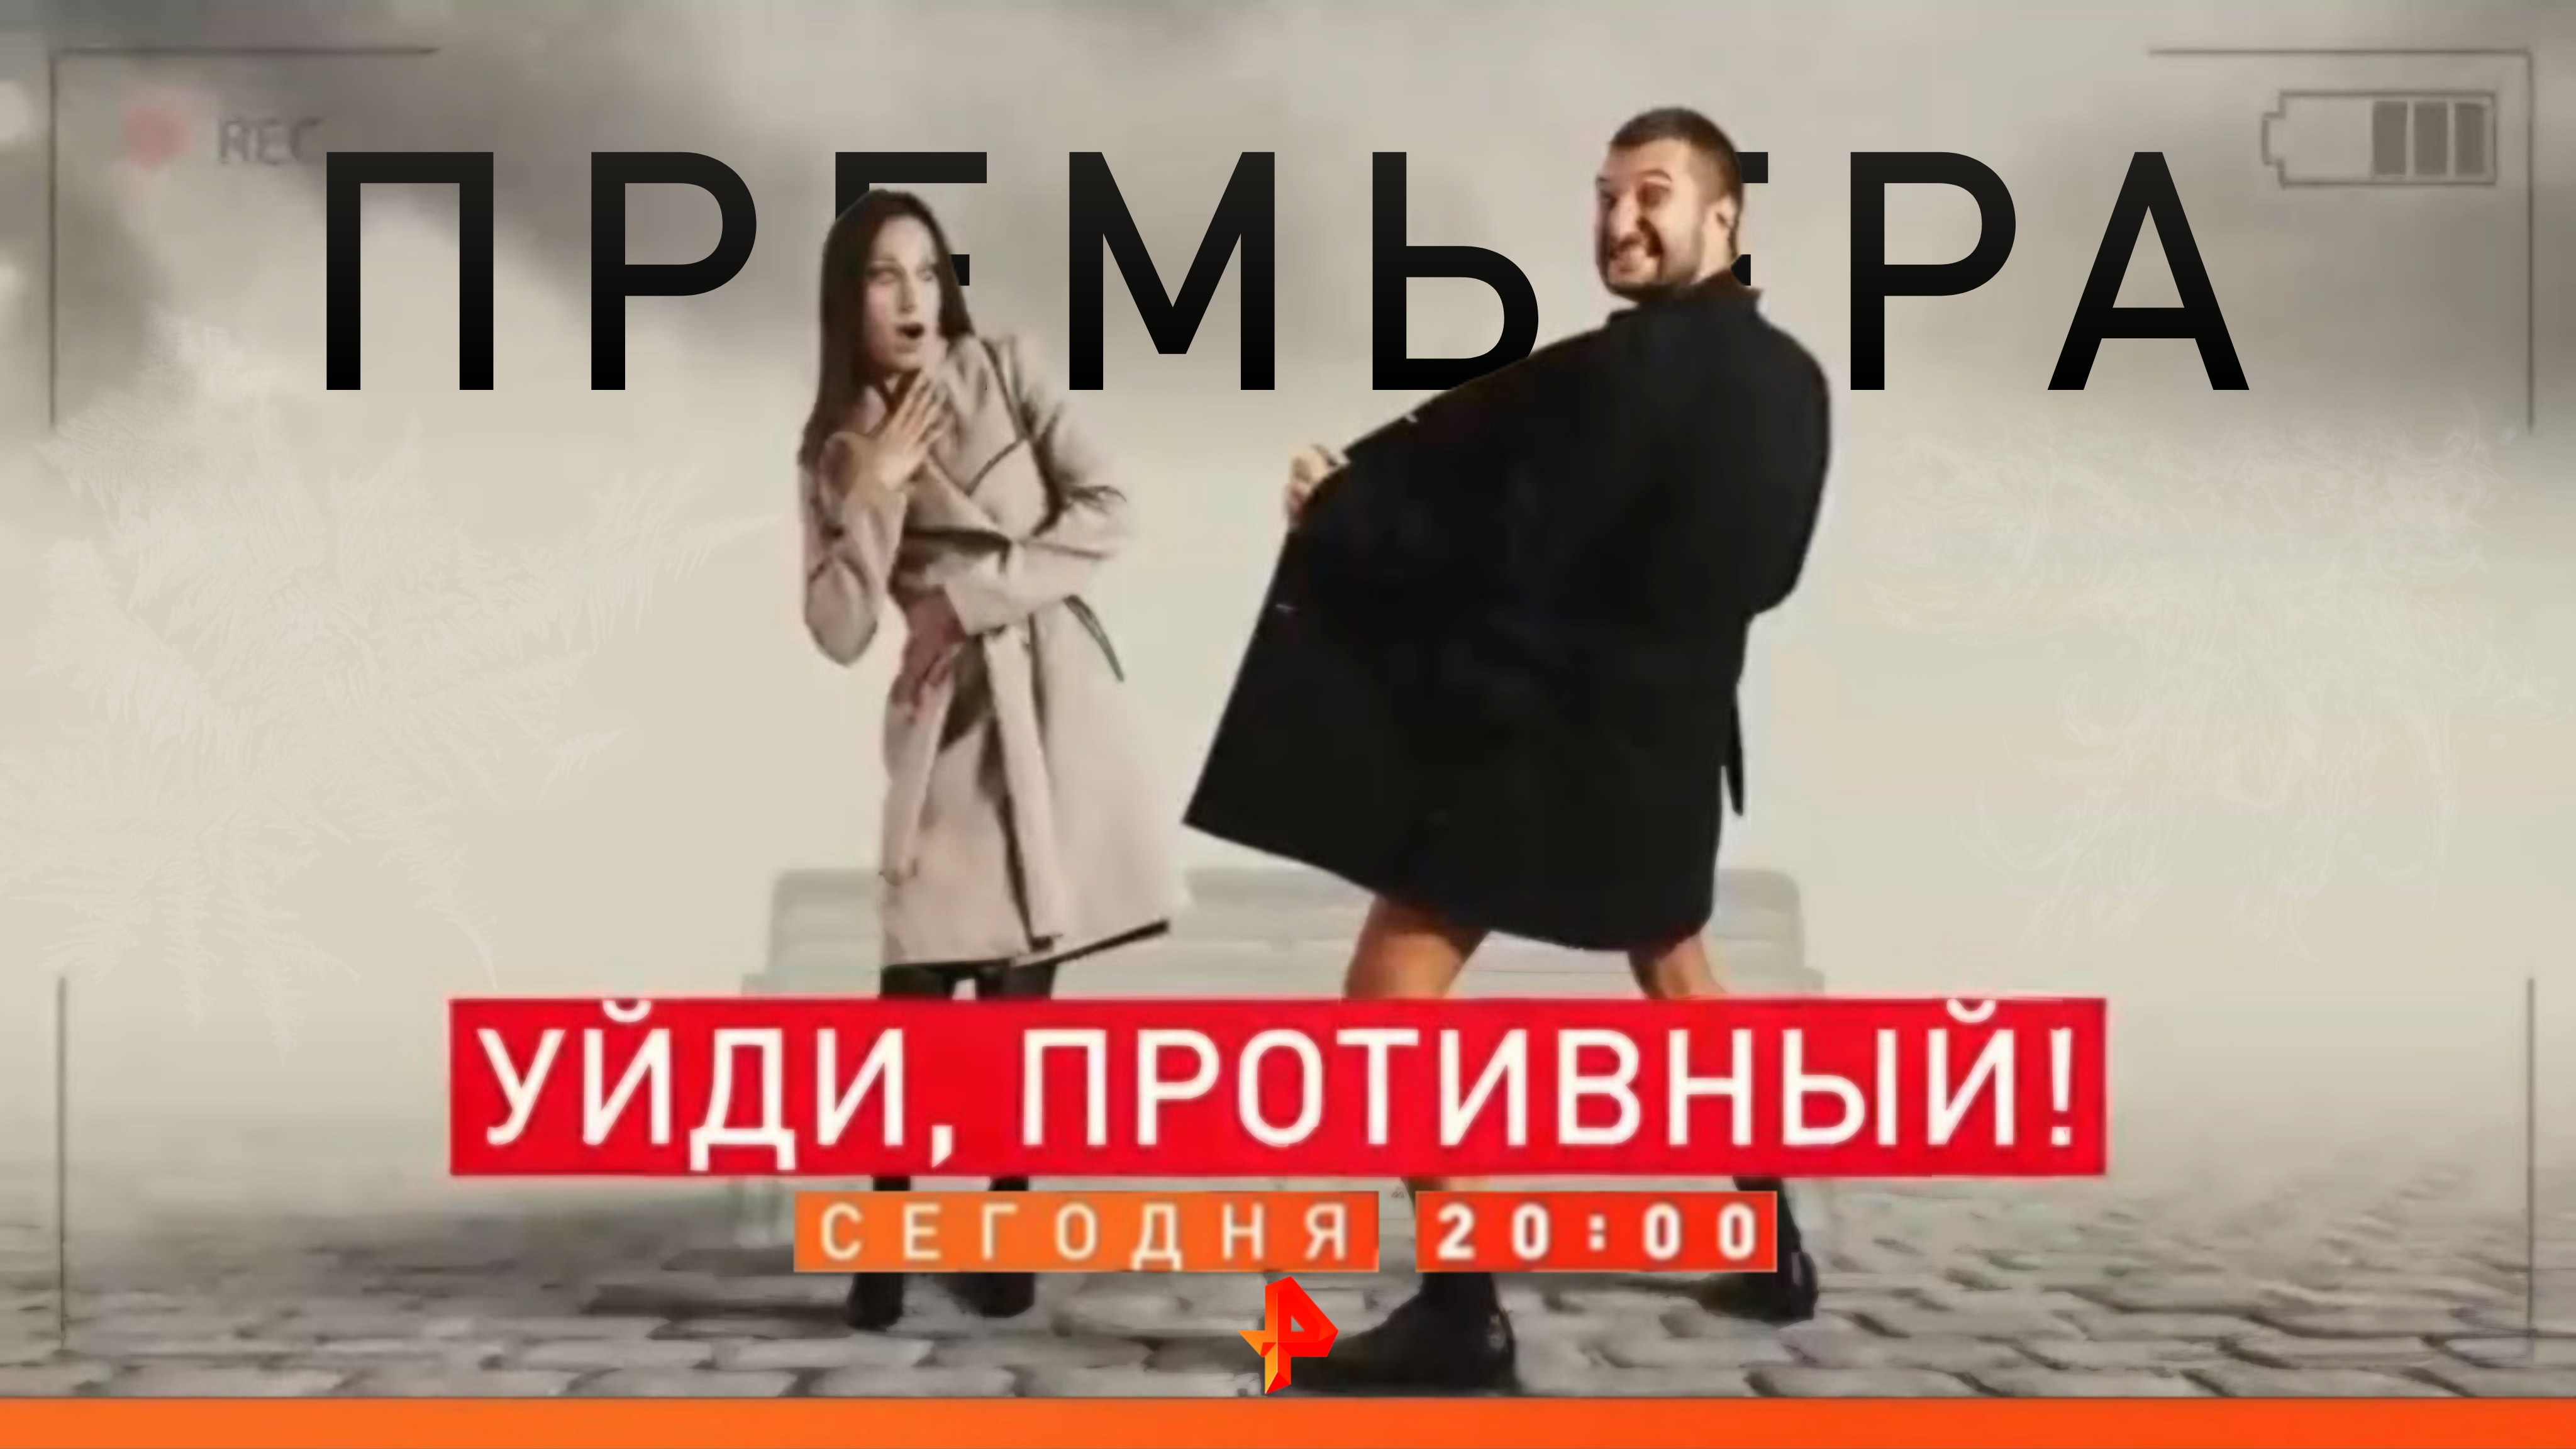 Скриншот анонса документального расследования "Уйди, противный!" (Рен ТВ, 18.01.2019)